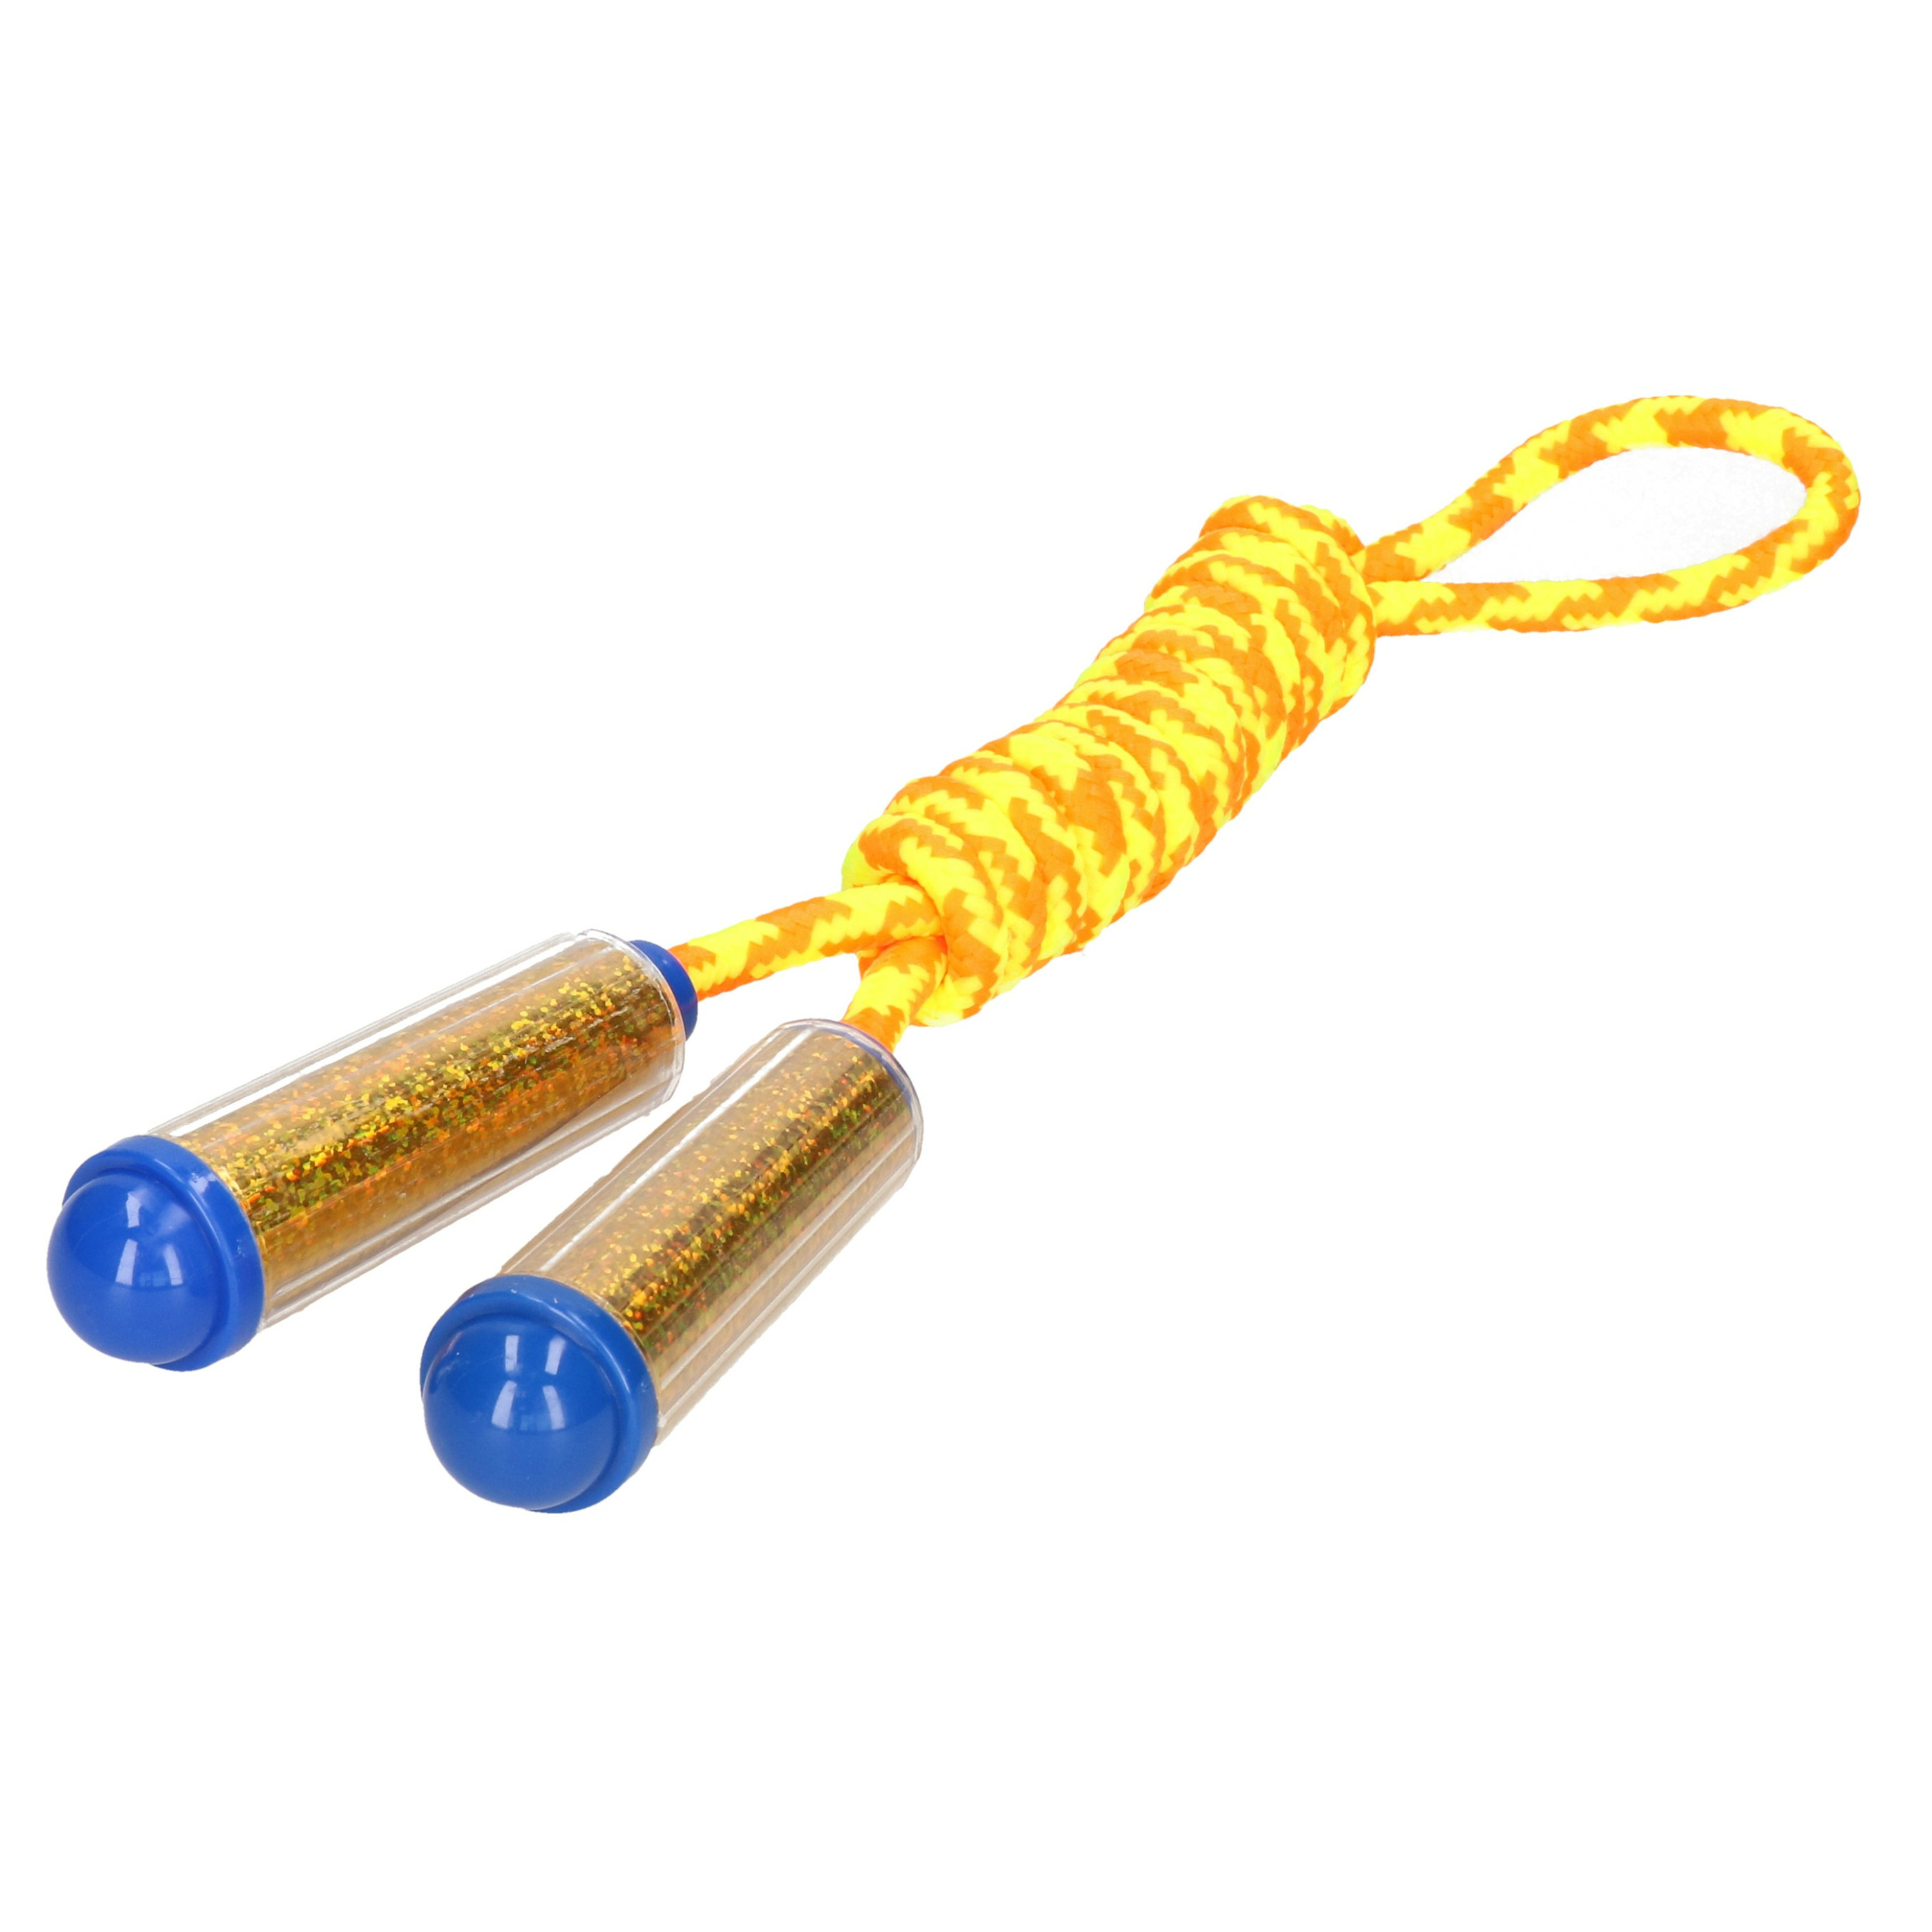 Springtouw met kunststof handvatten geel-oranje-goud 210 cm speelgoed